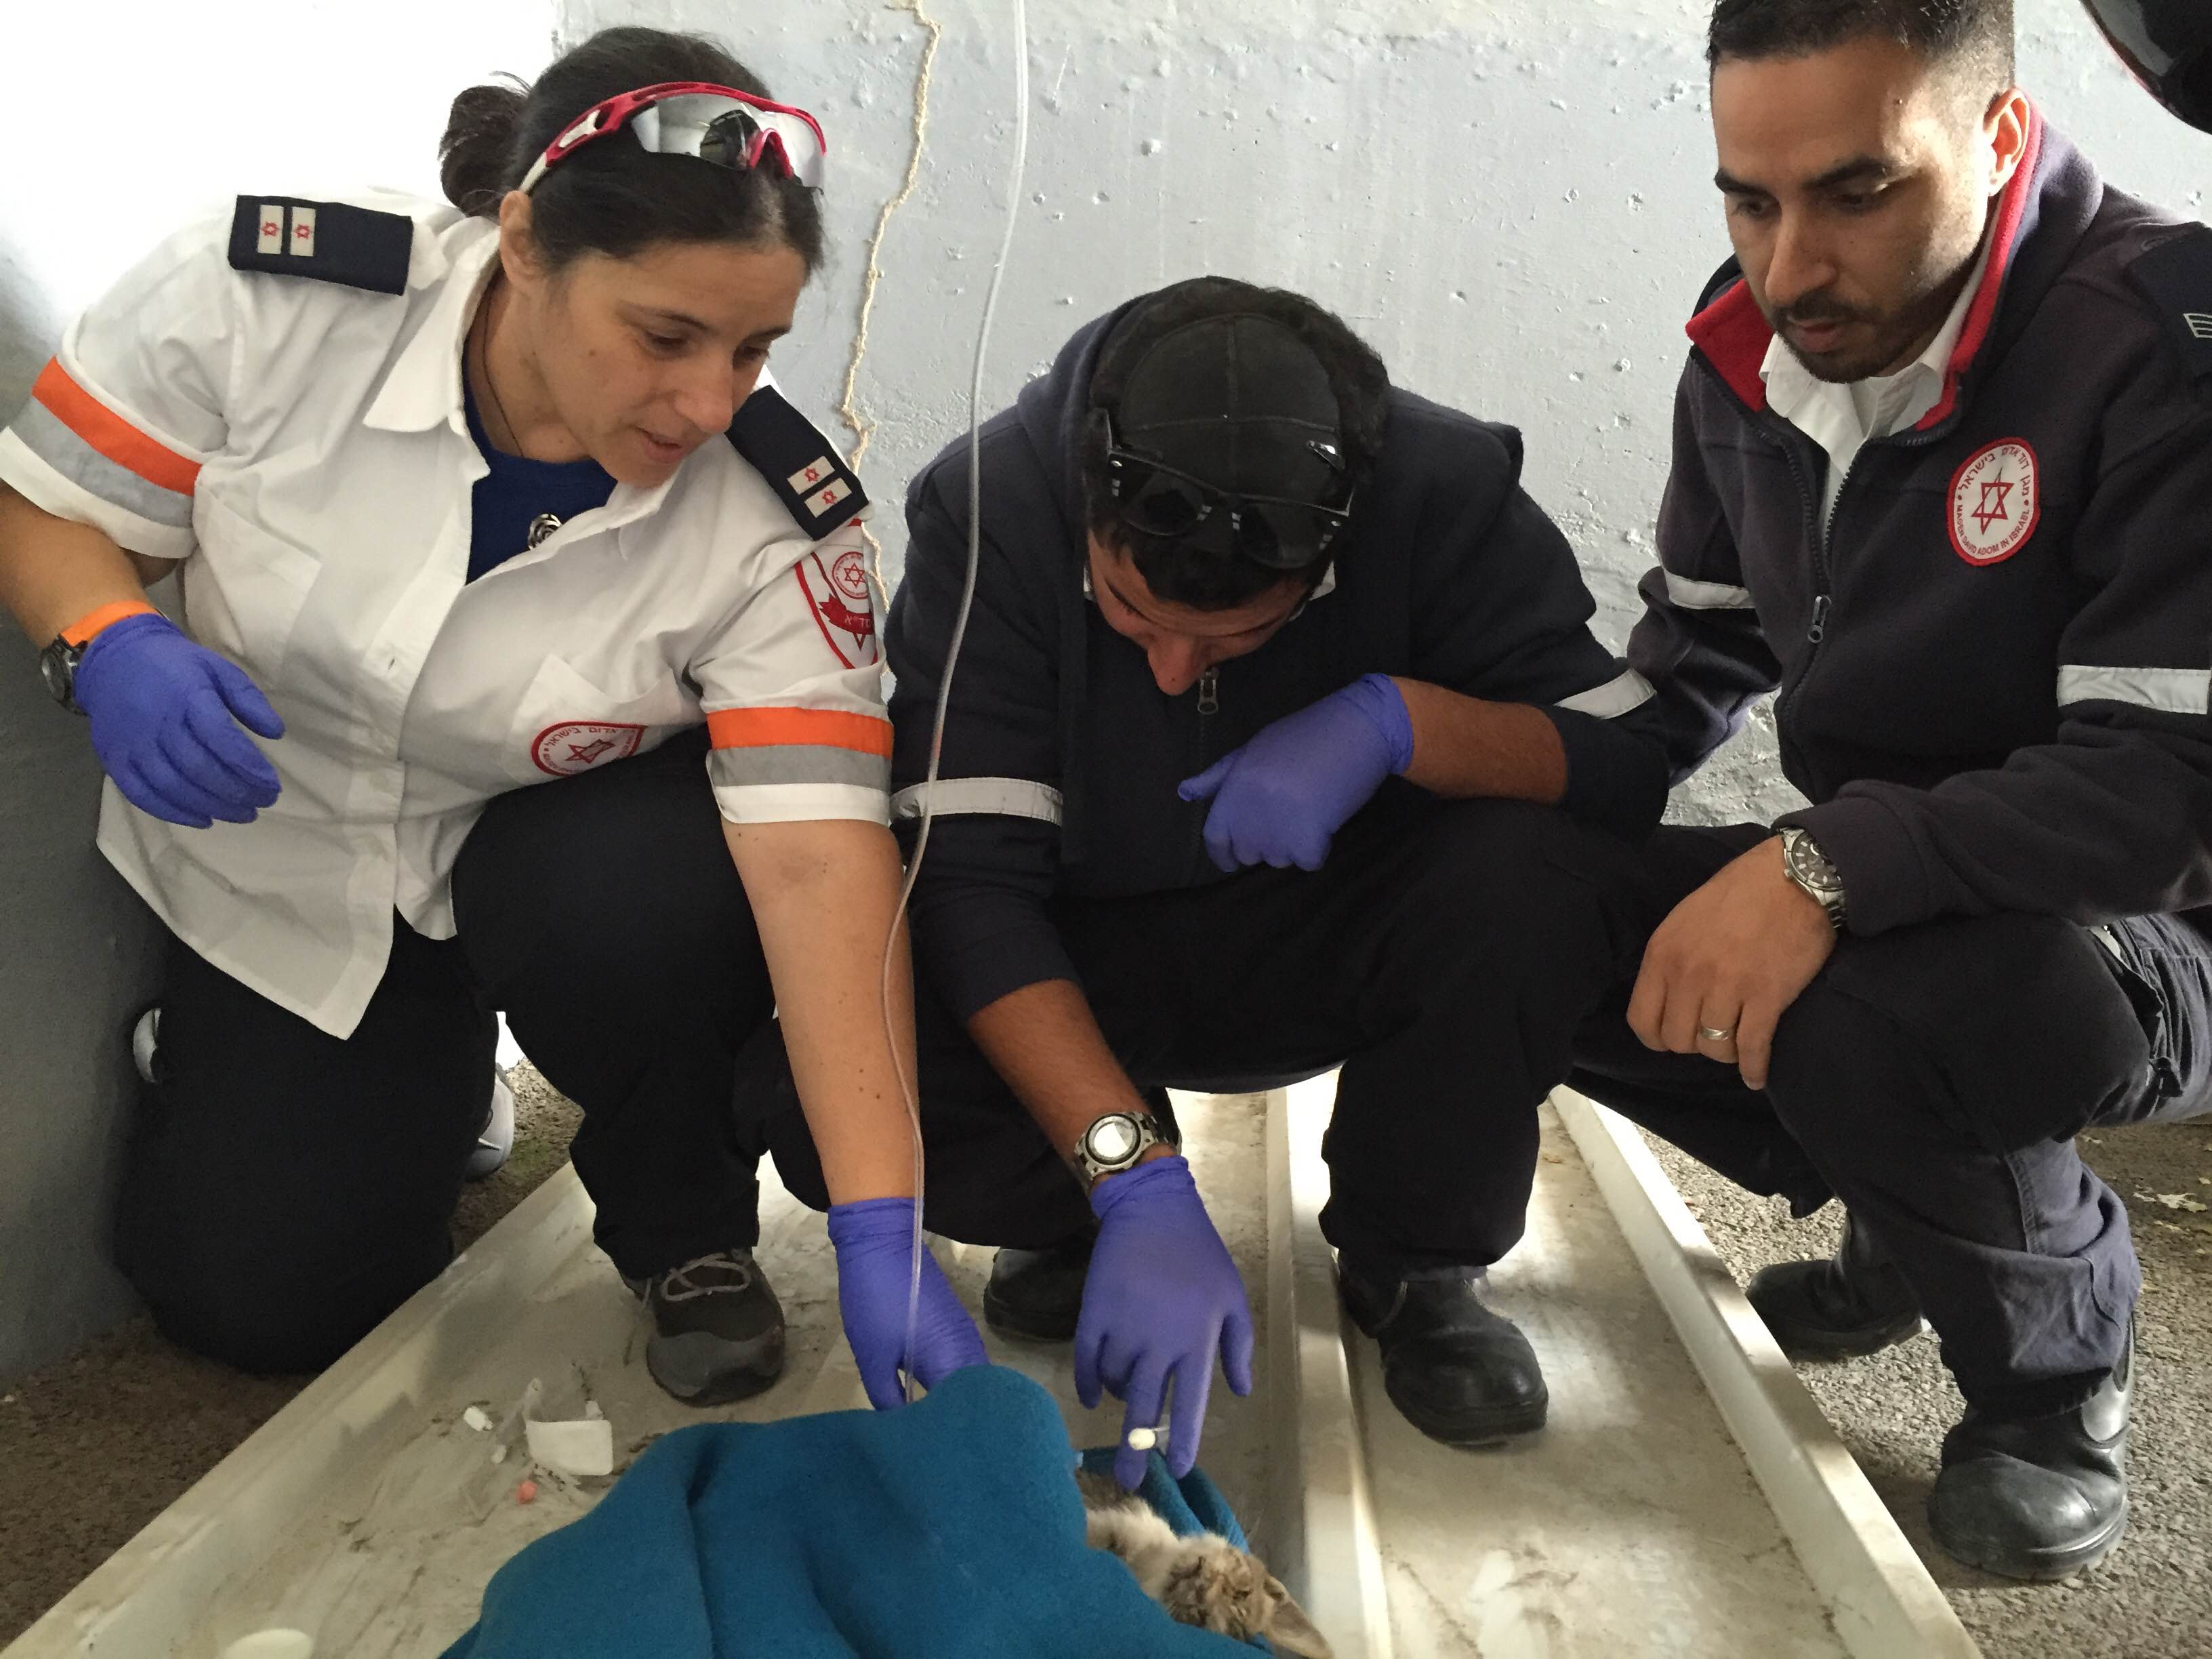 צוות מד"א מטפל בחתול בתחנת מד"א בית שאן. צילום: אופיר בן חמו